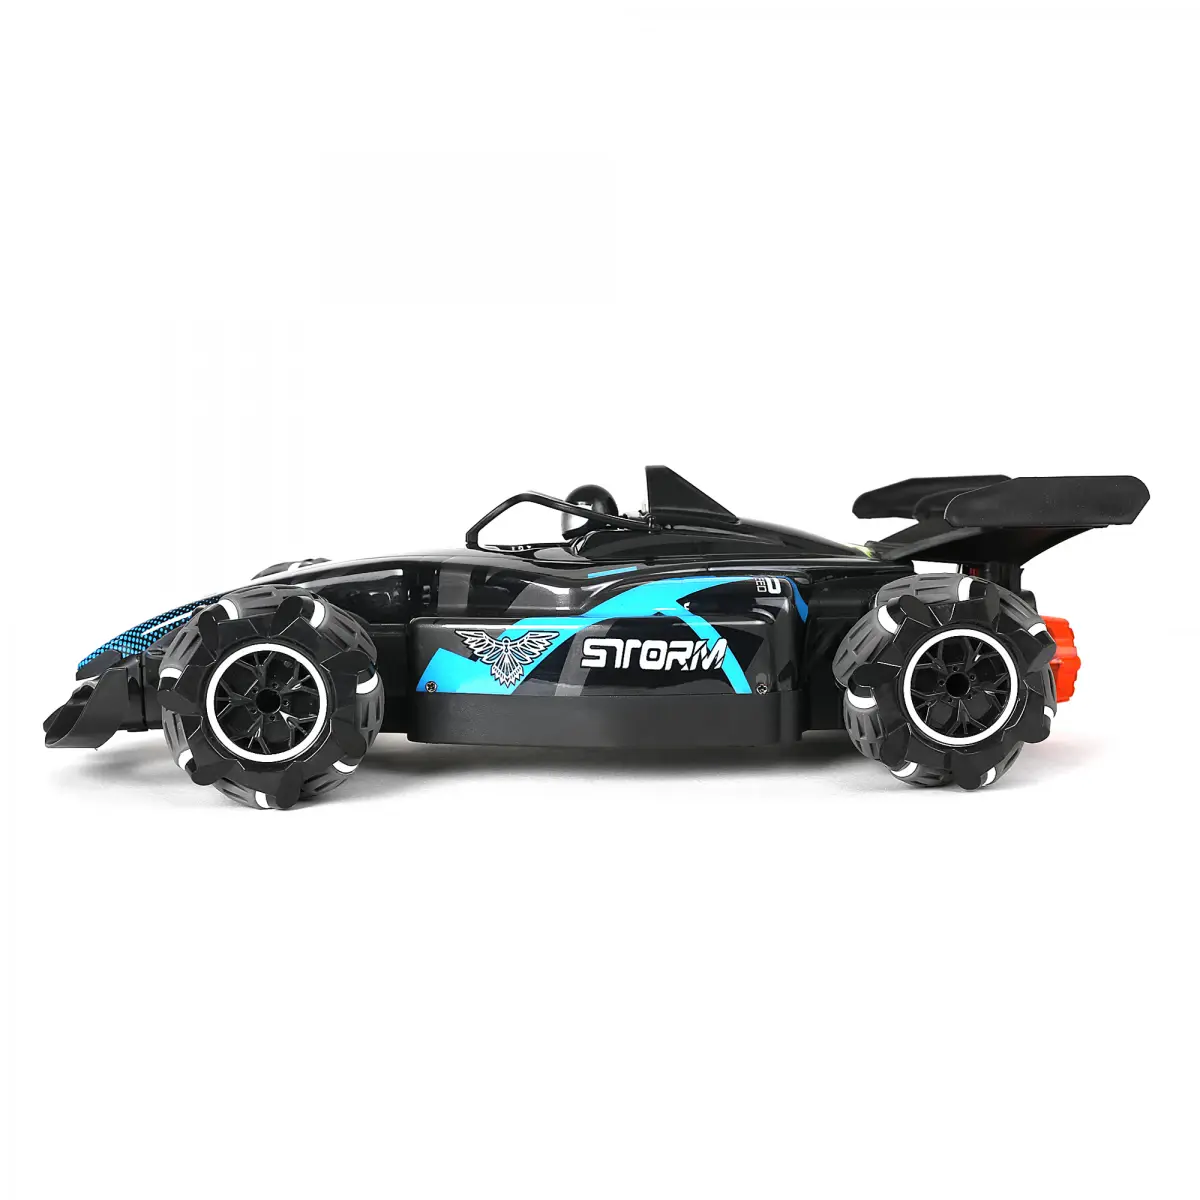 Ralleyz Formula Drift Car Remote Control Car for Kids, 6Y+, Blue